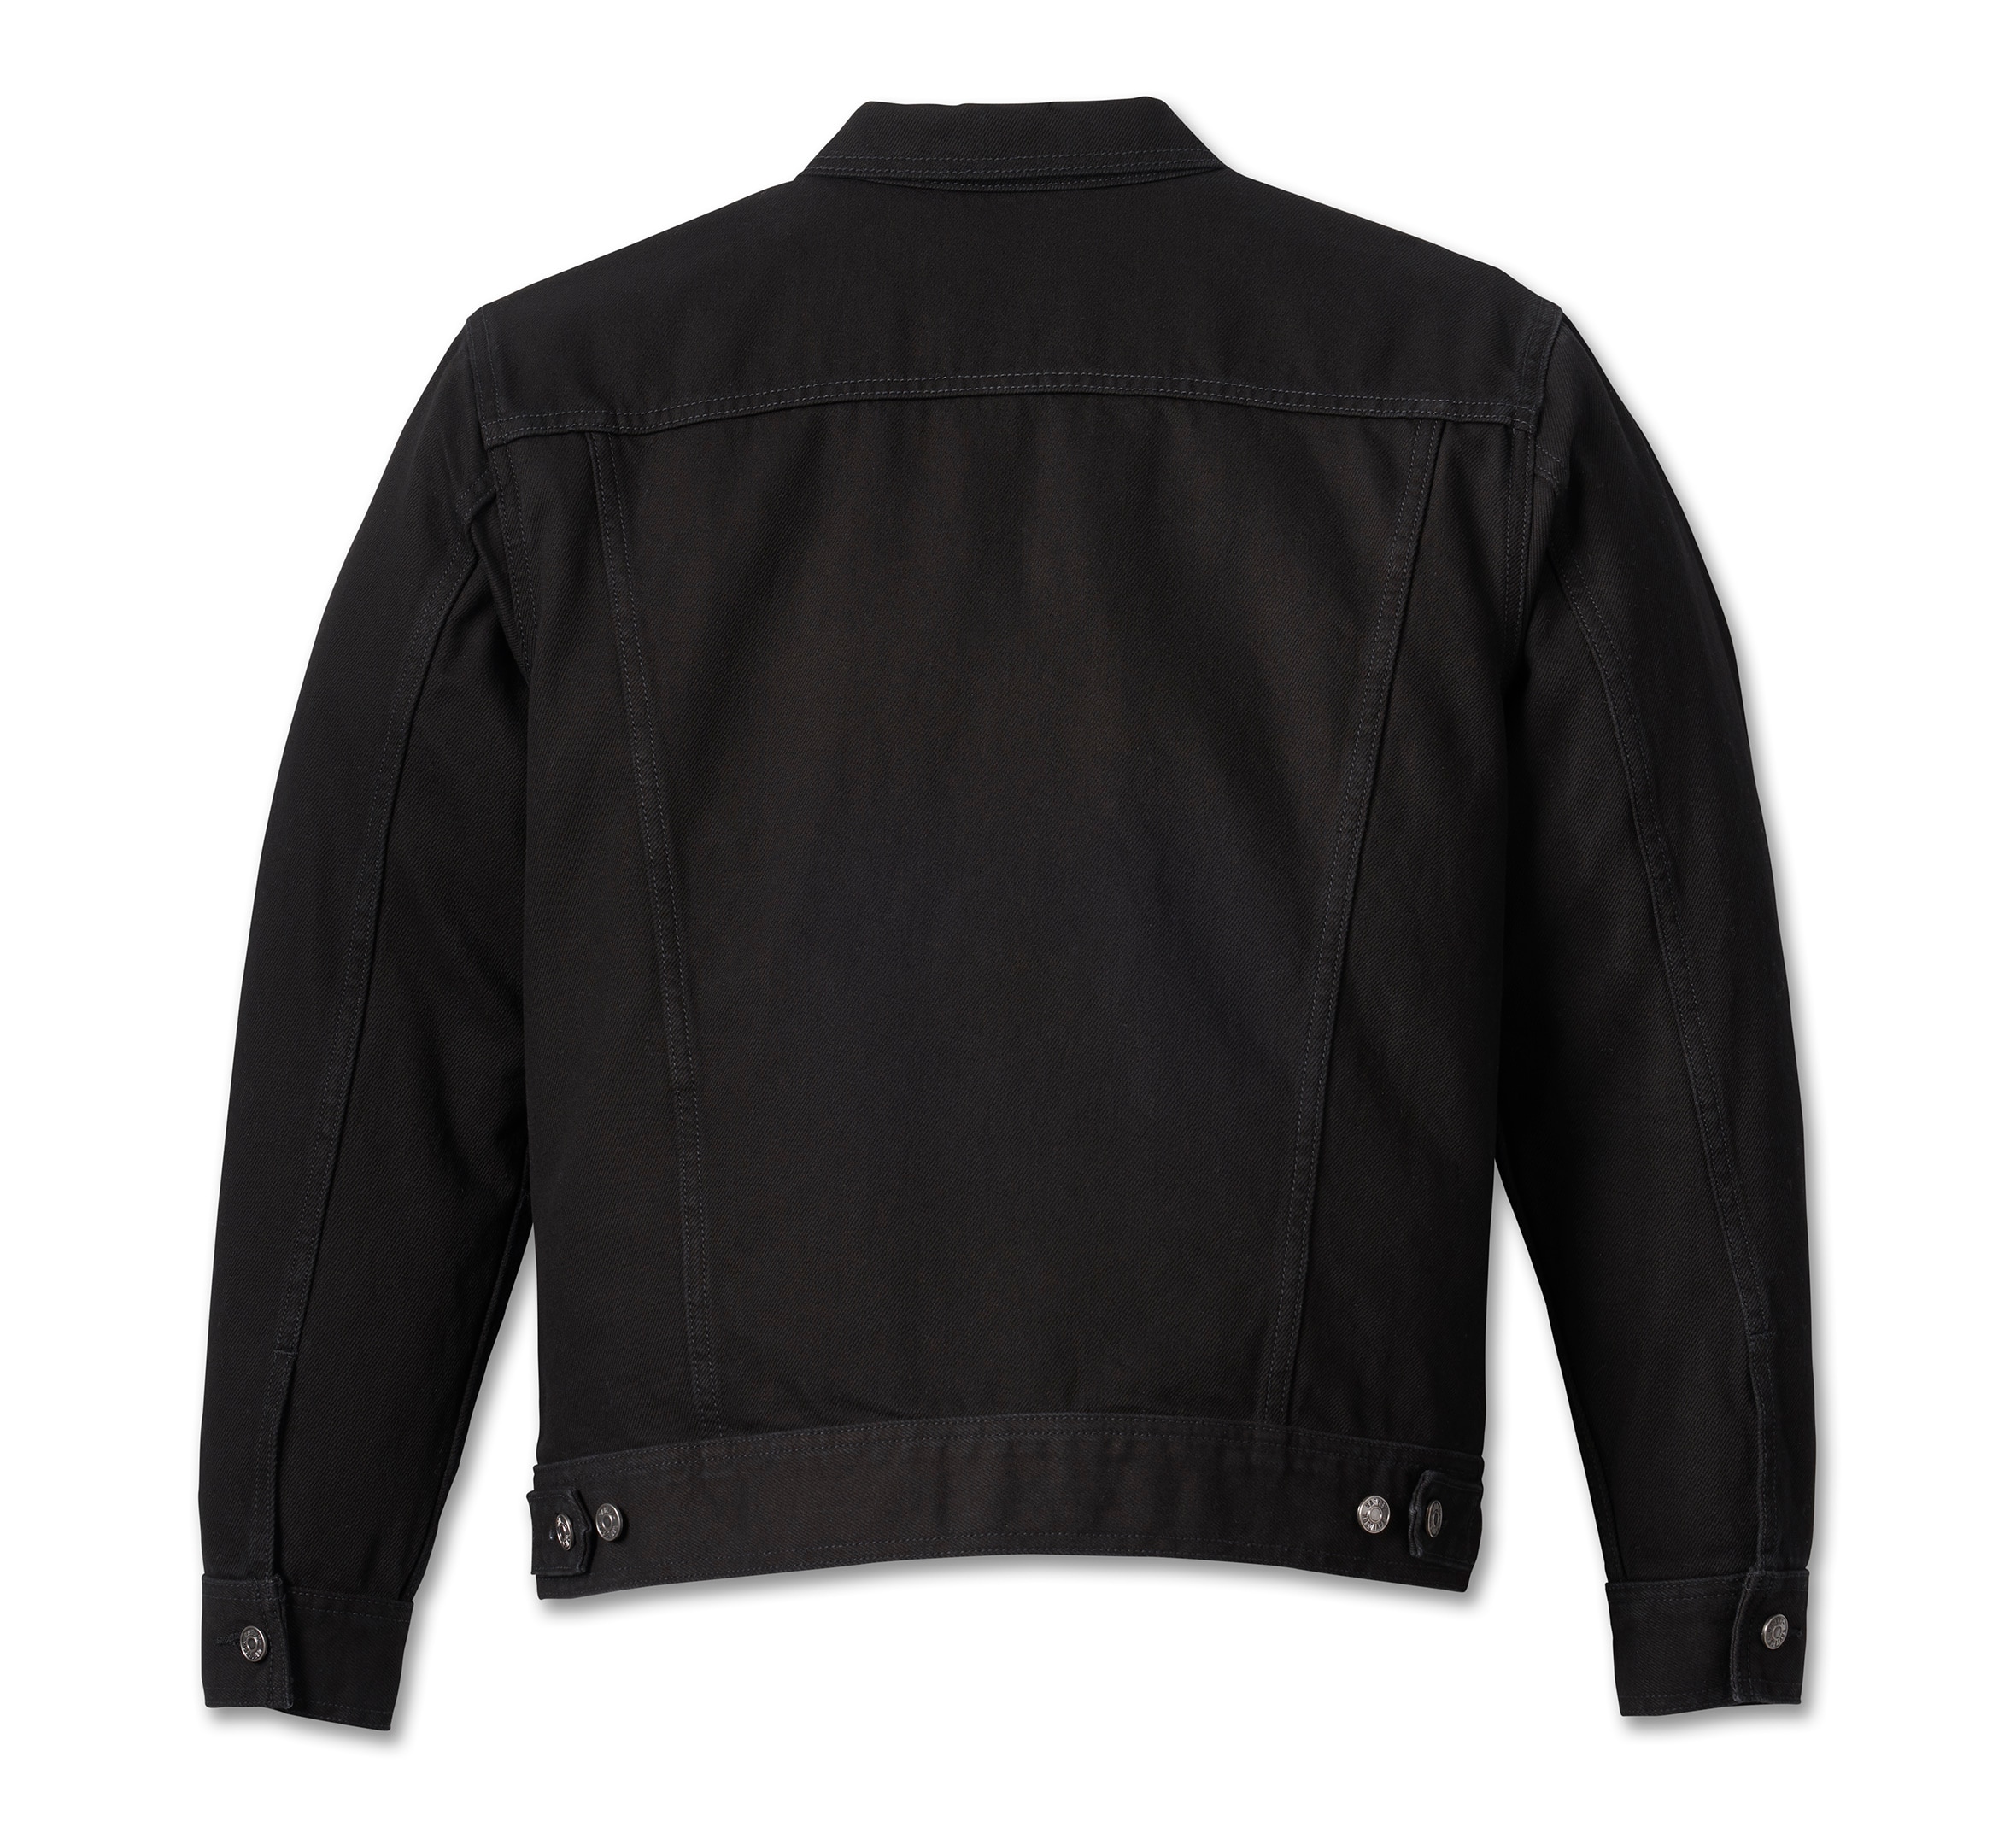 Harley Davidson Black Men’s Denim Jacket